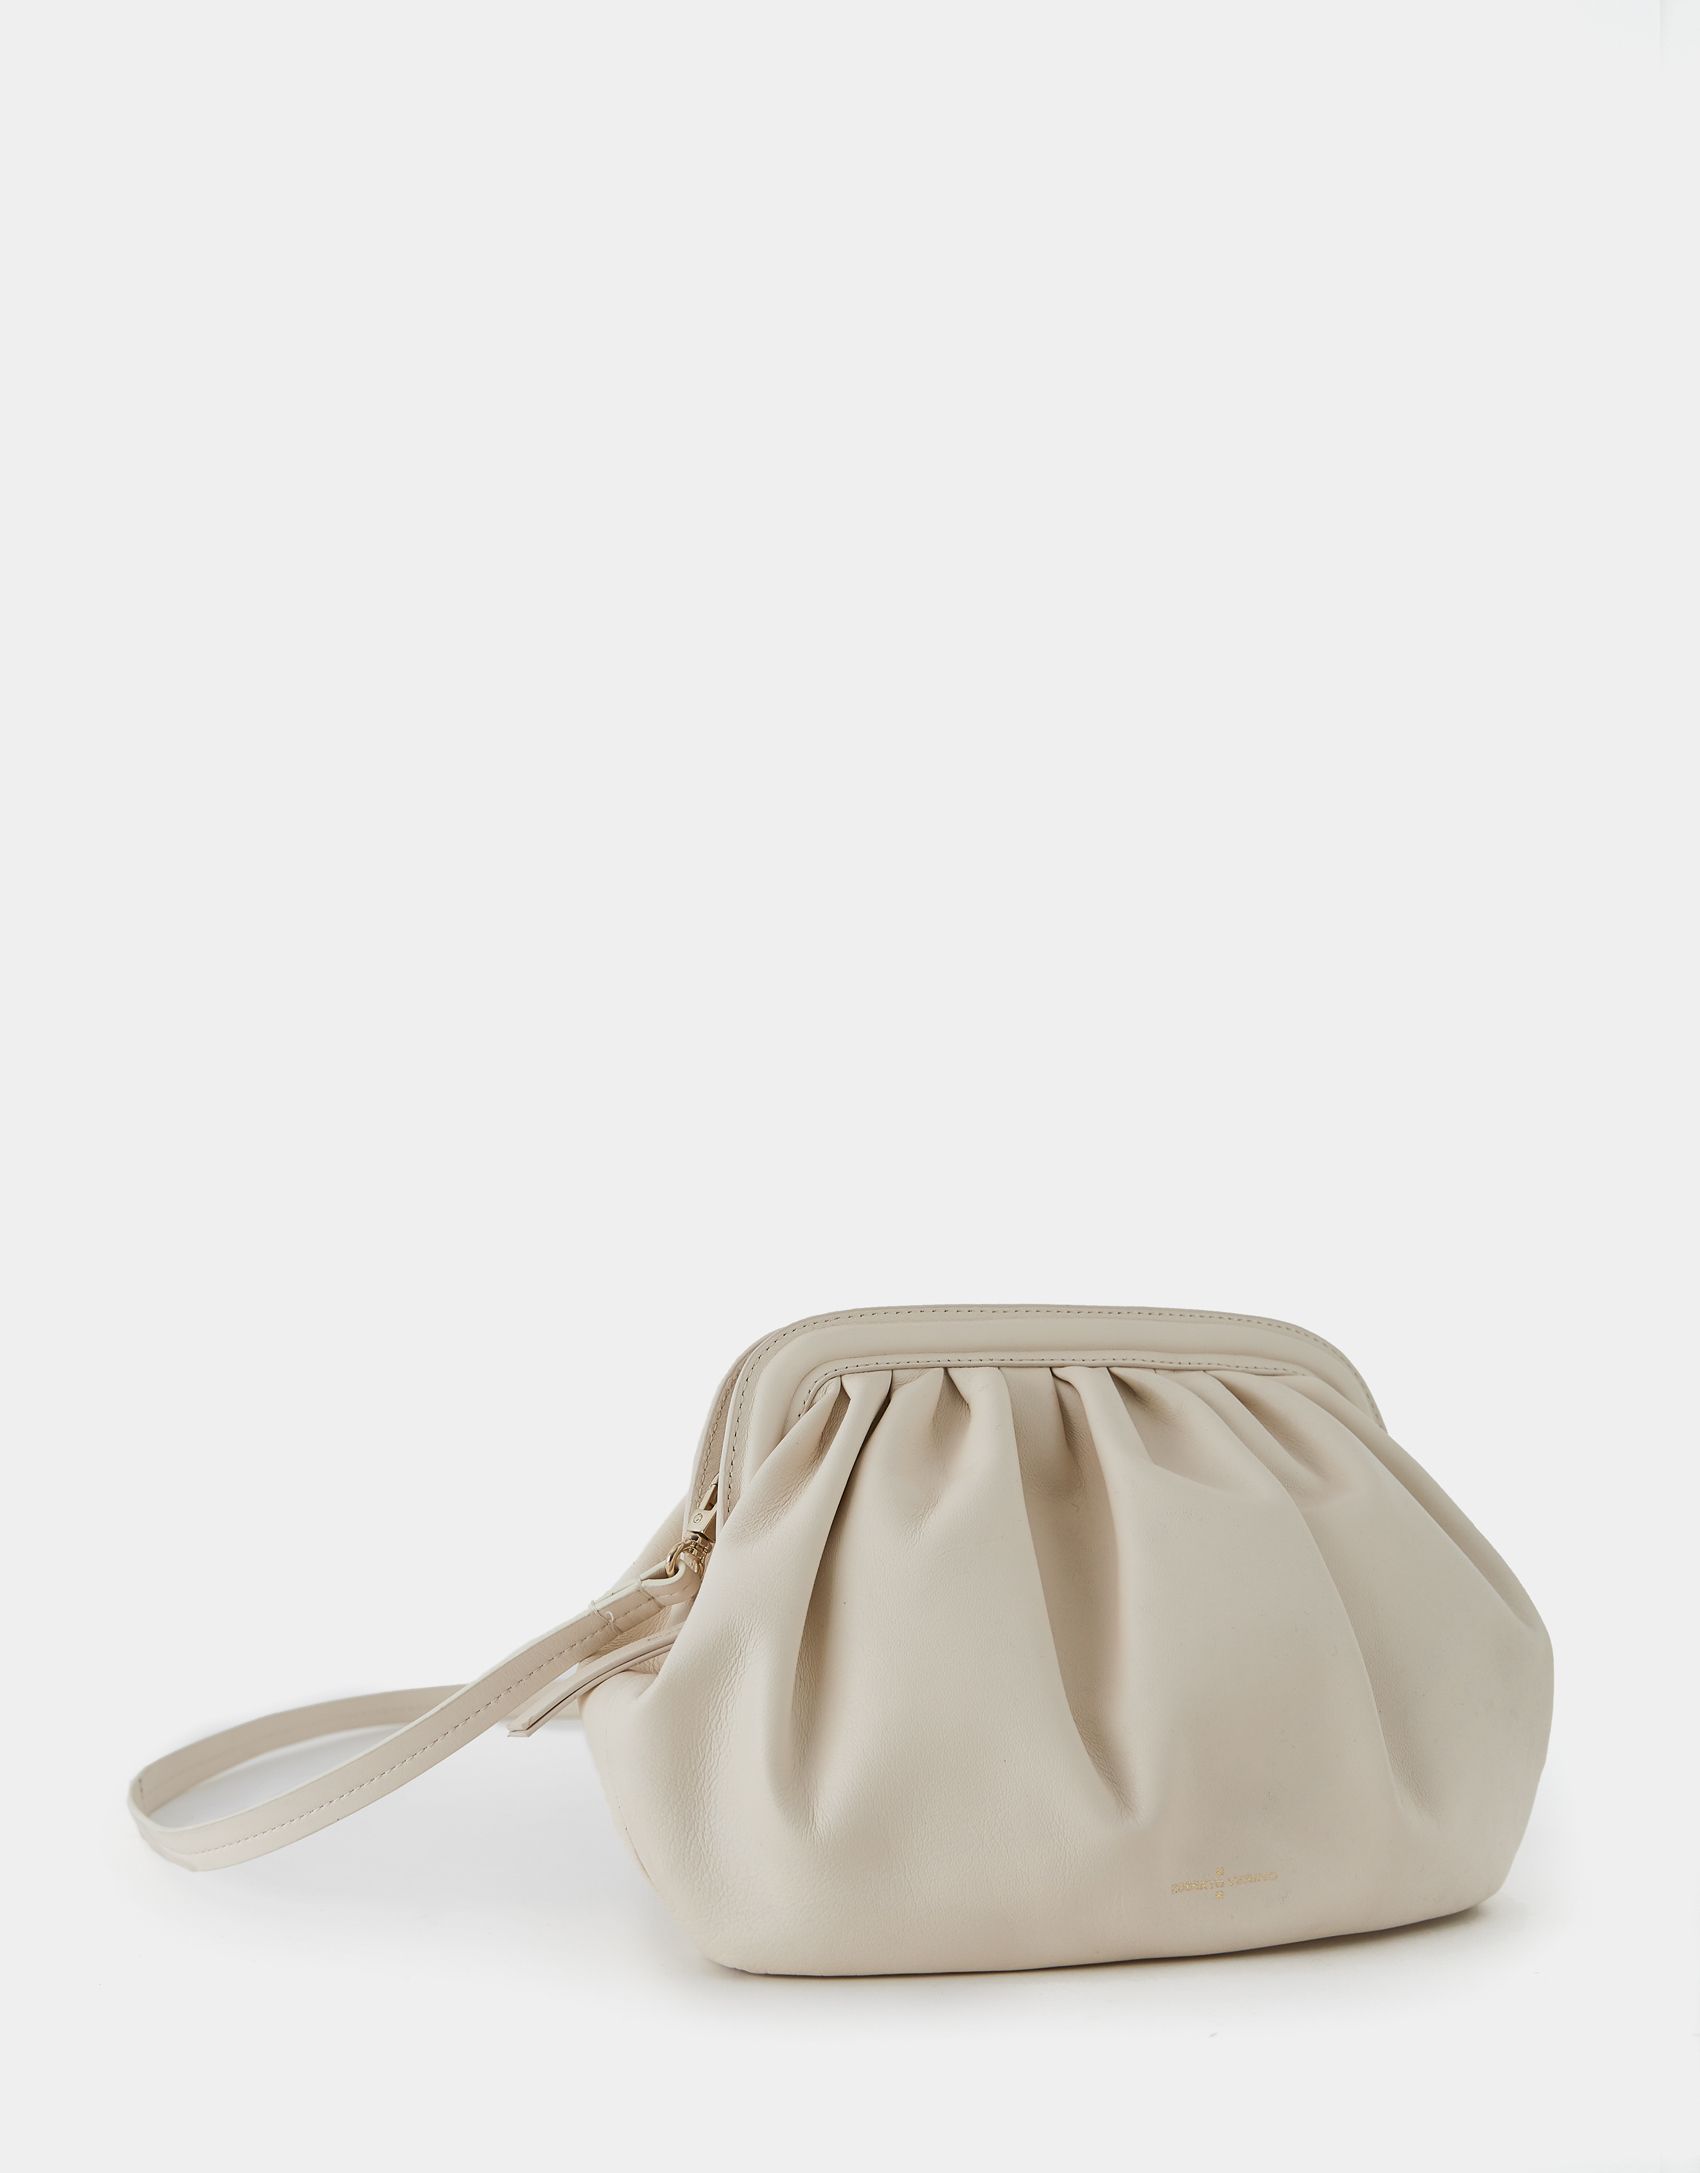 El bolso de mano Úrsula, disponible en negro y beige, es el bolso perfecto para cualquier ocasión.